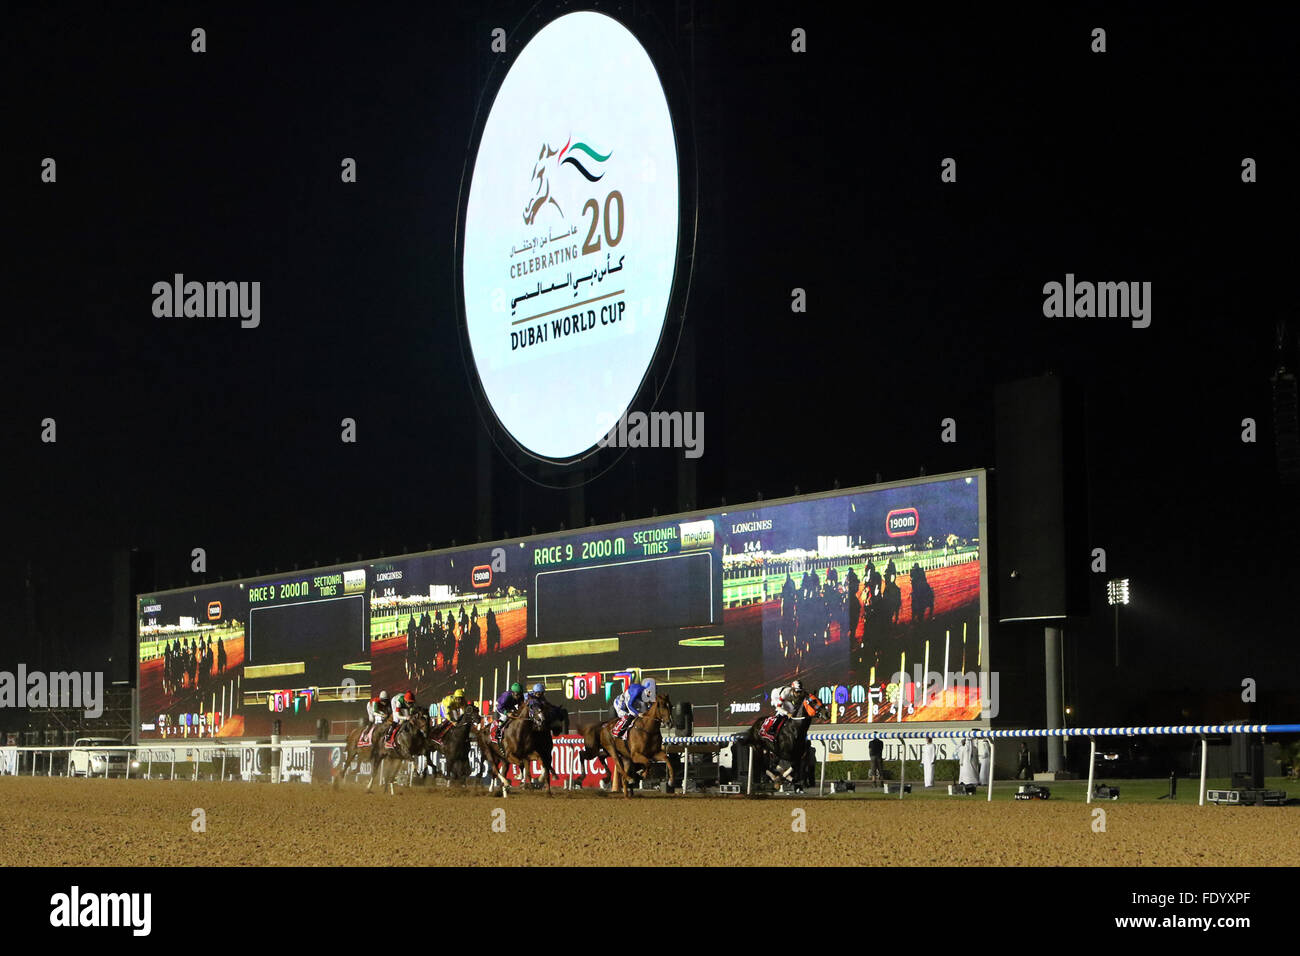 Dubaï, Émirats arabes unis, chevaux et jockeys au cours de la 20e Coupe du Monde de Dubaï avant de l'écran vidéo Banque D'Images